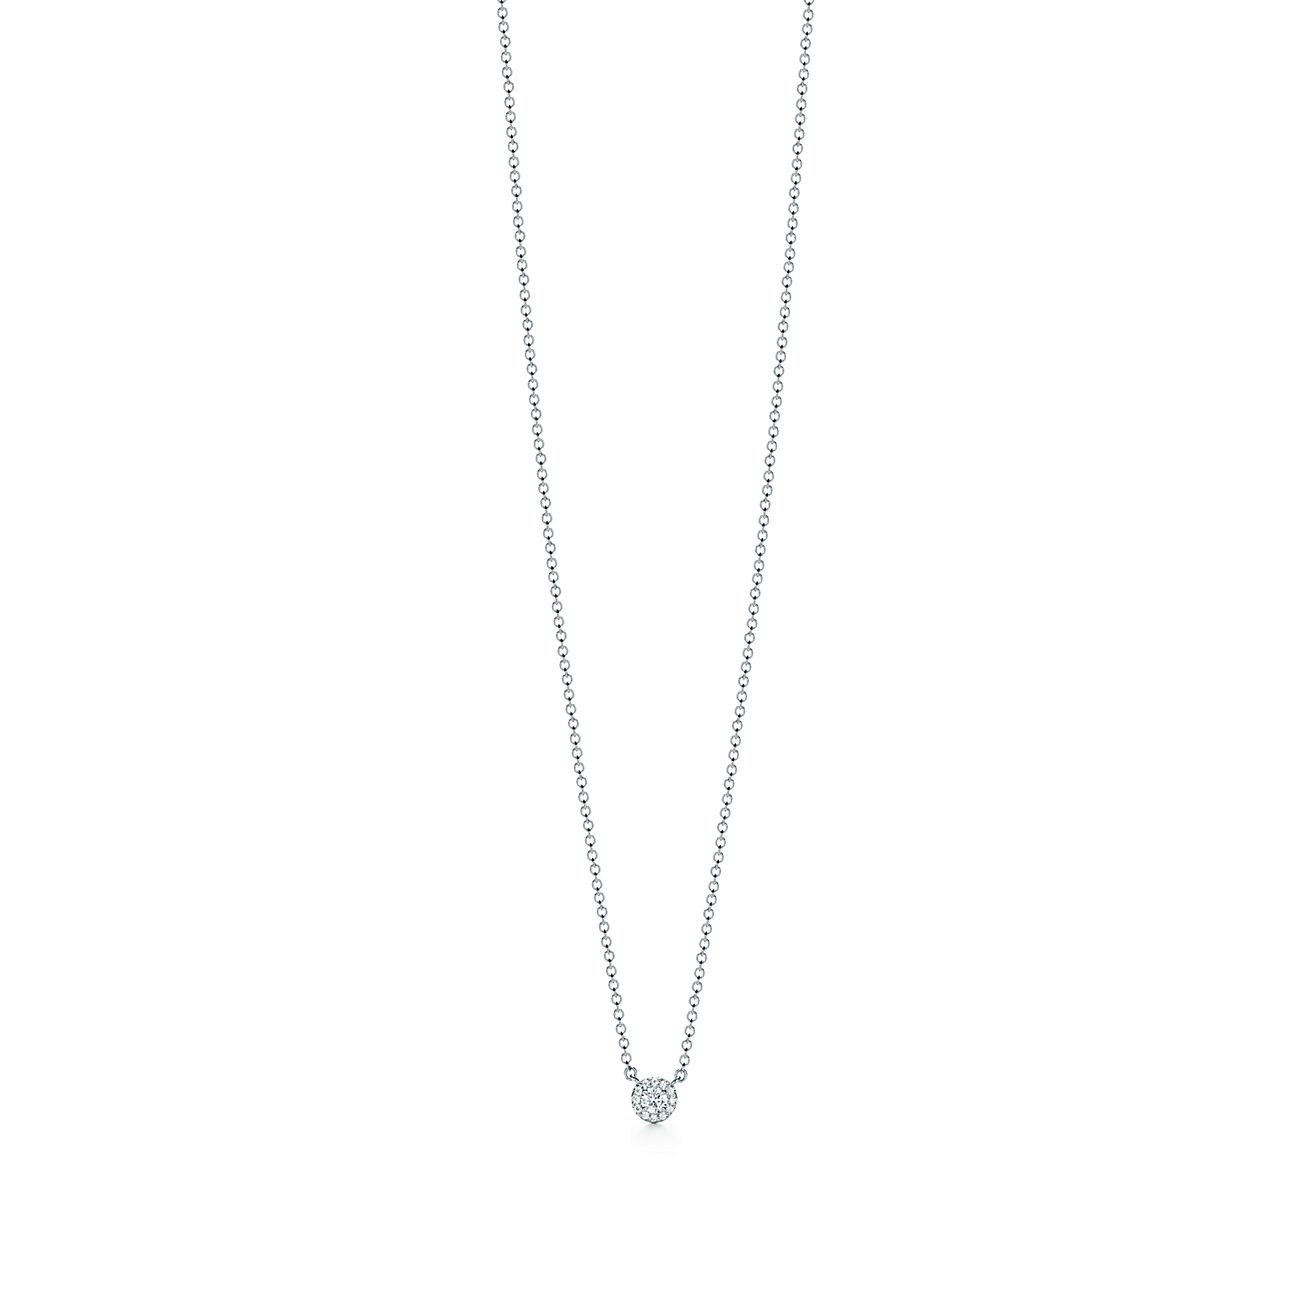 Tiffany Soleste pendant in platinum 